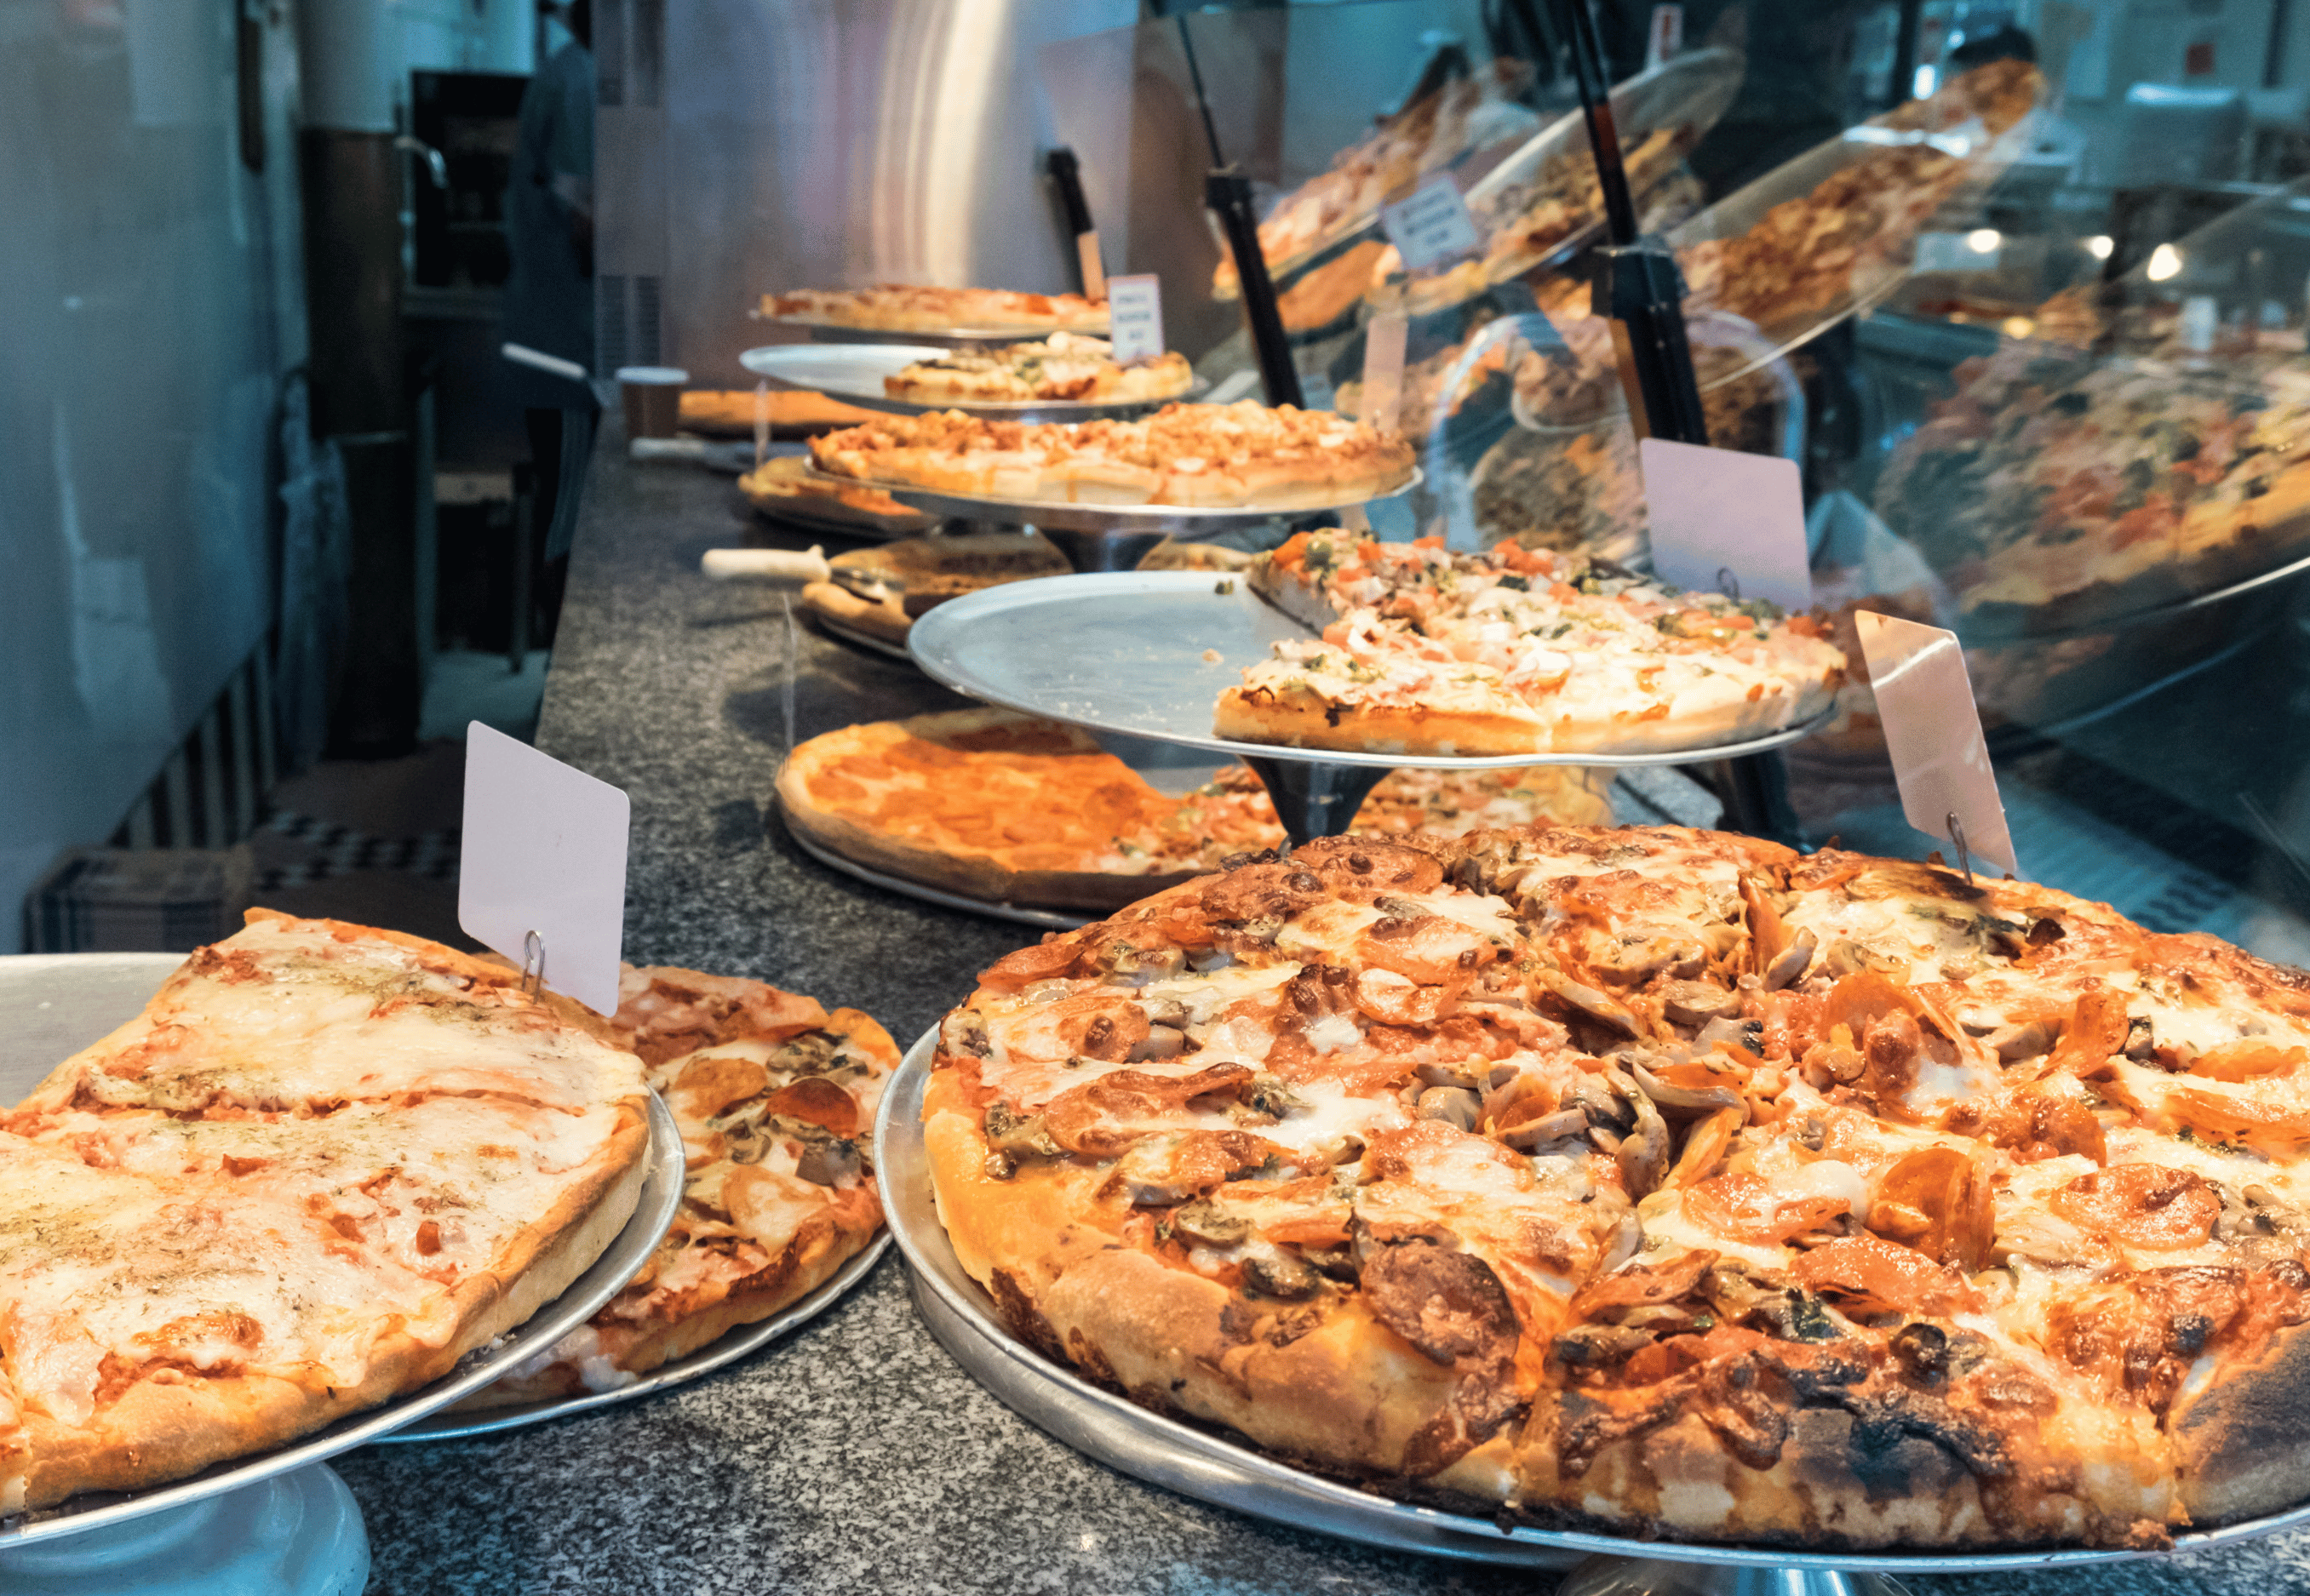 Pizza New York Là Must Try Mà Mình Muốn Giới Thiệu Cho Mọi Người